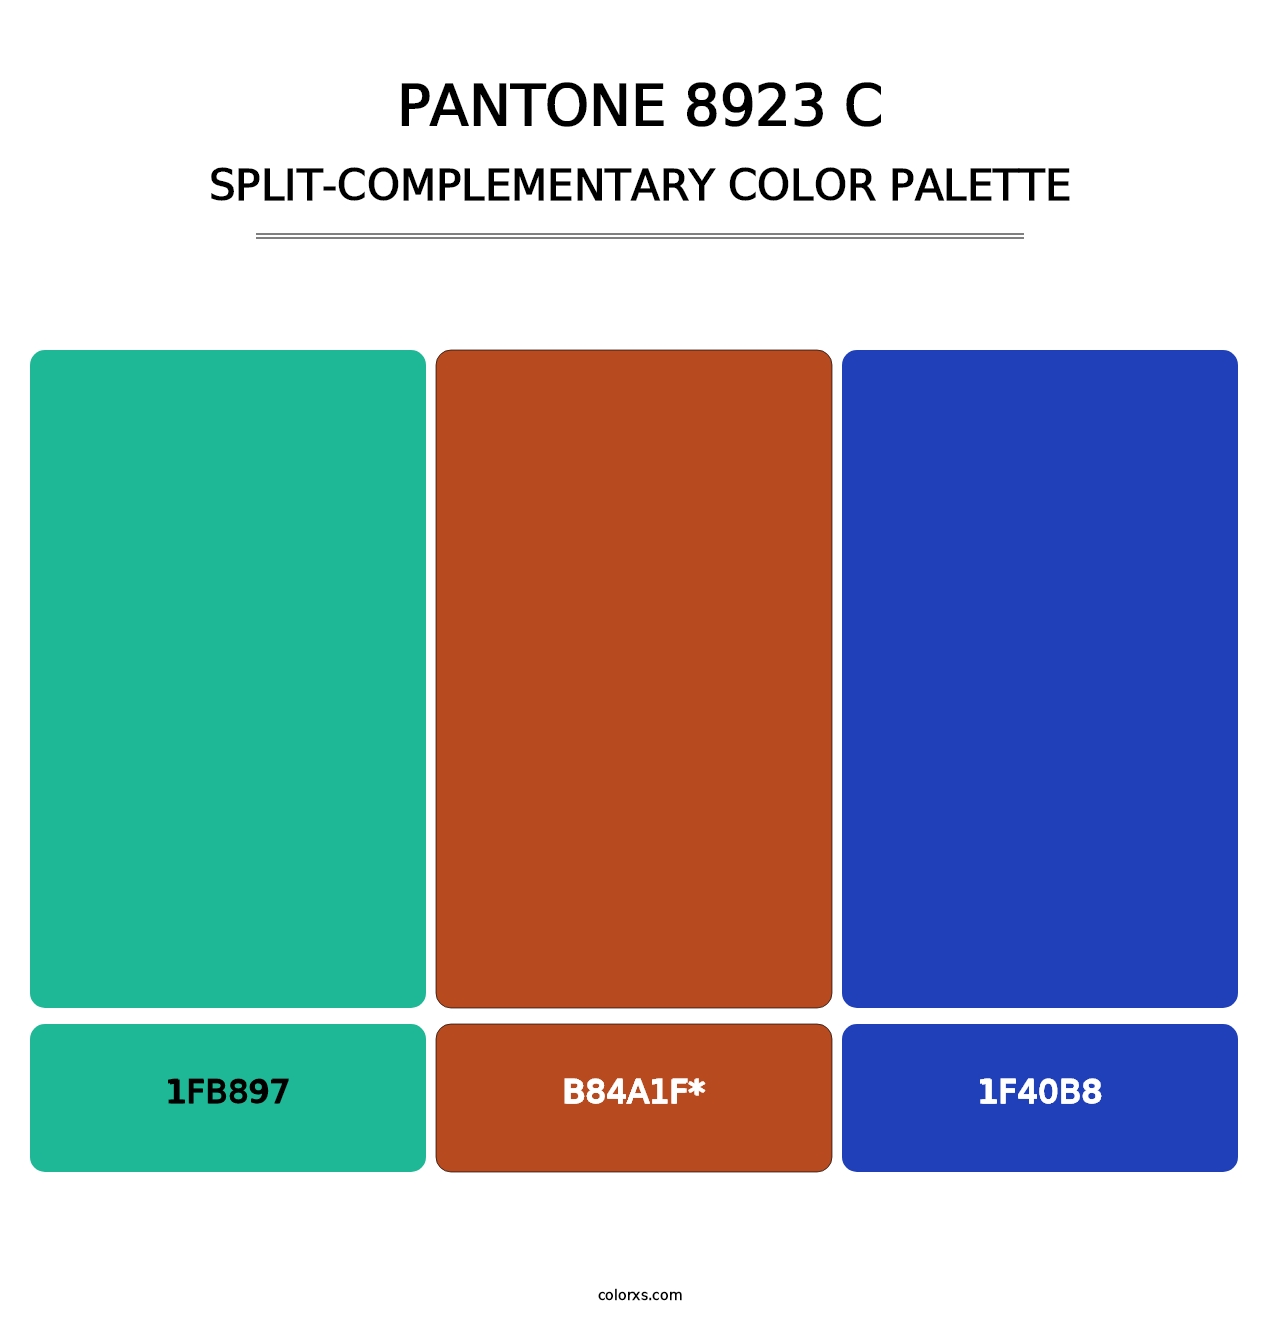 PANTONE 8923 C - Split-Complementary Color Palette